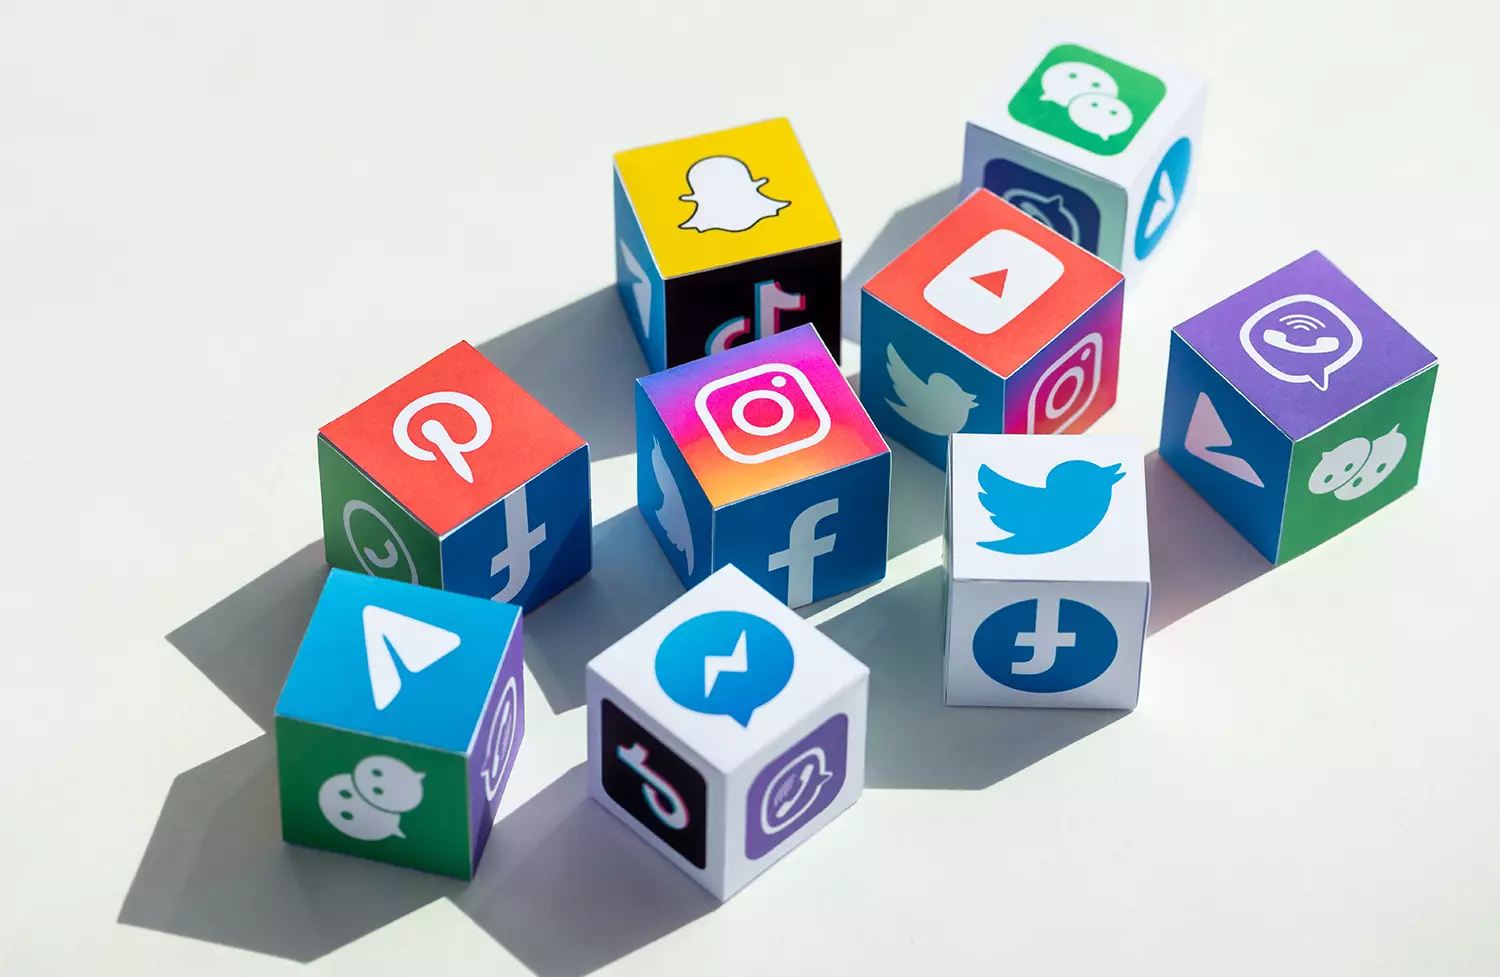 social media platforms logos on cubes